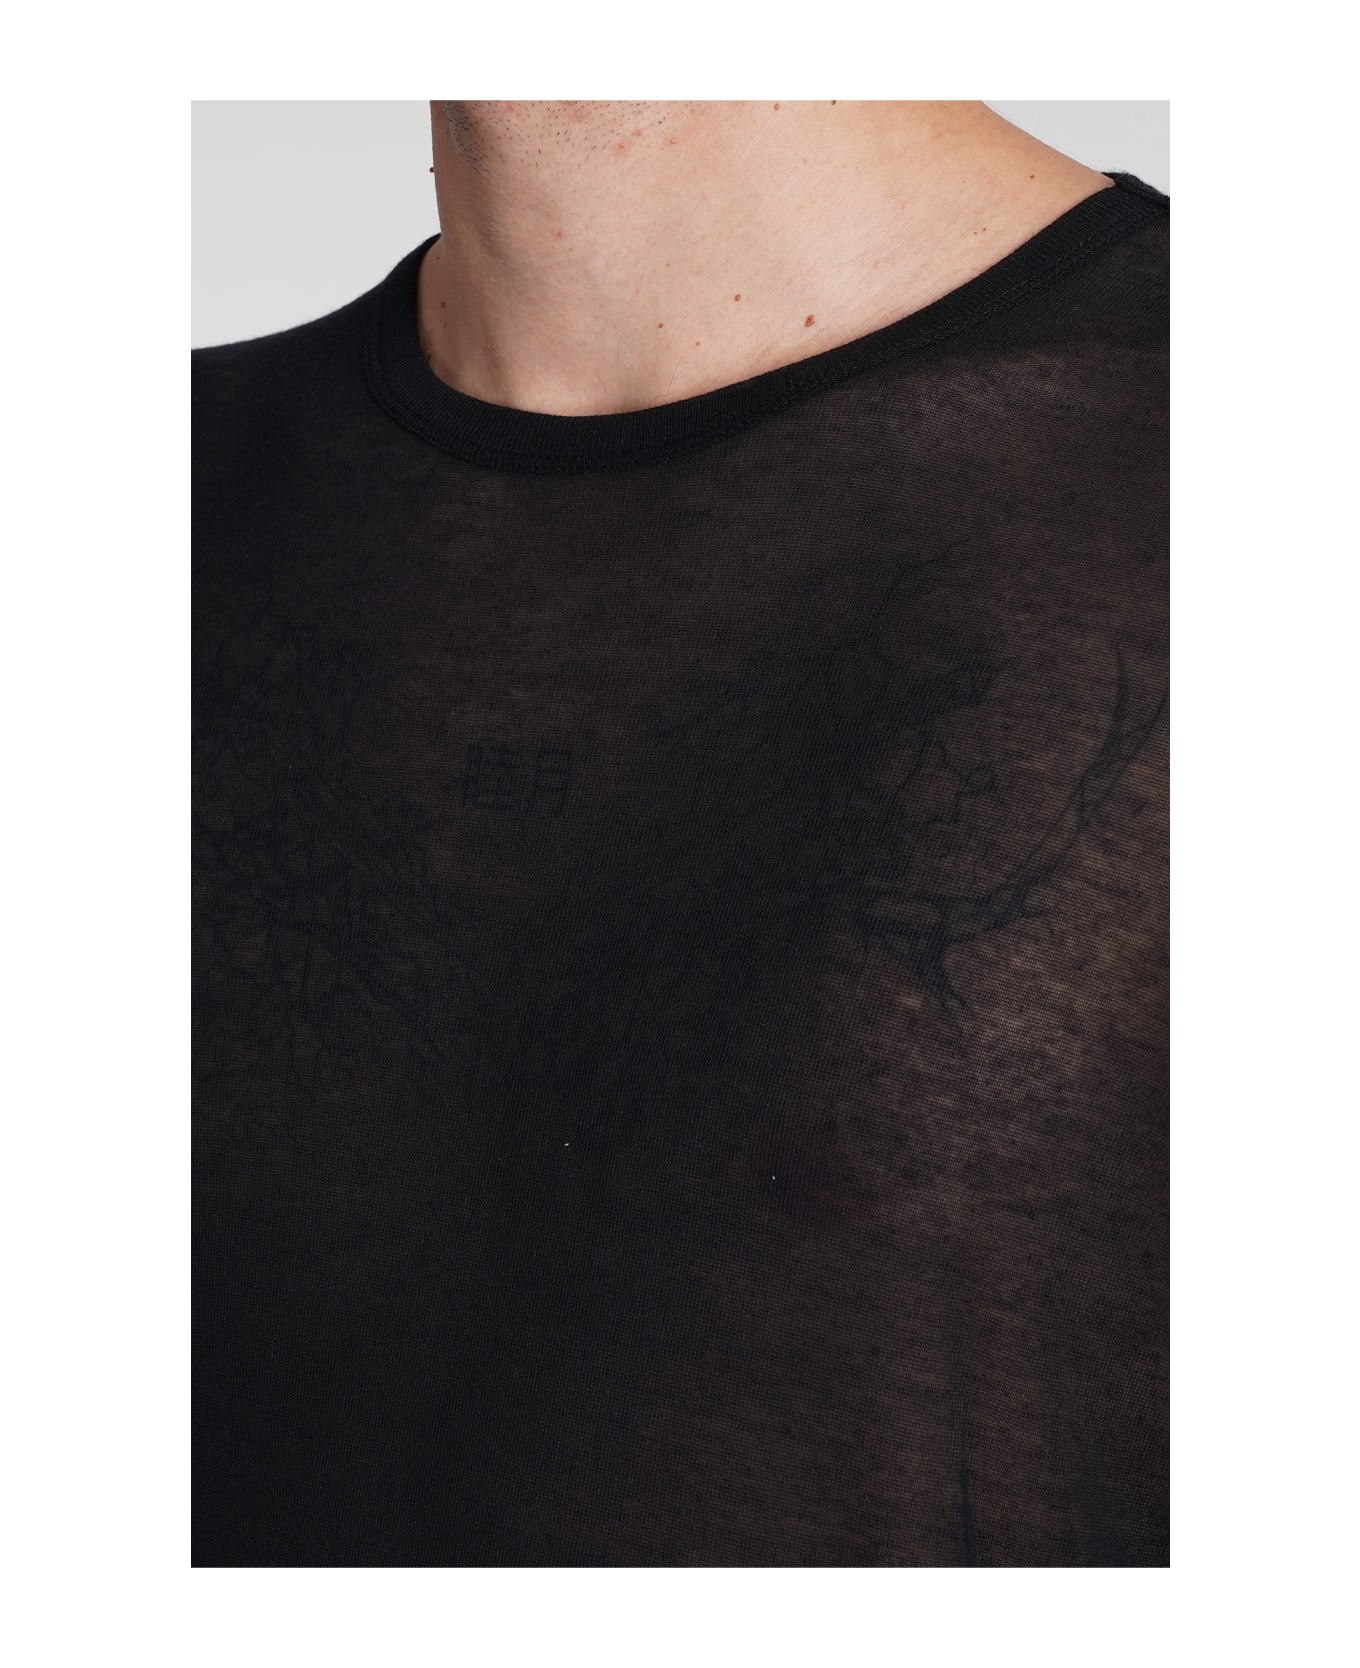 Ann Demeulemeester T-shirt In Black Modal - black